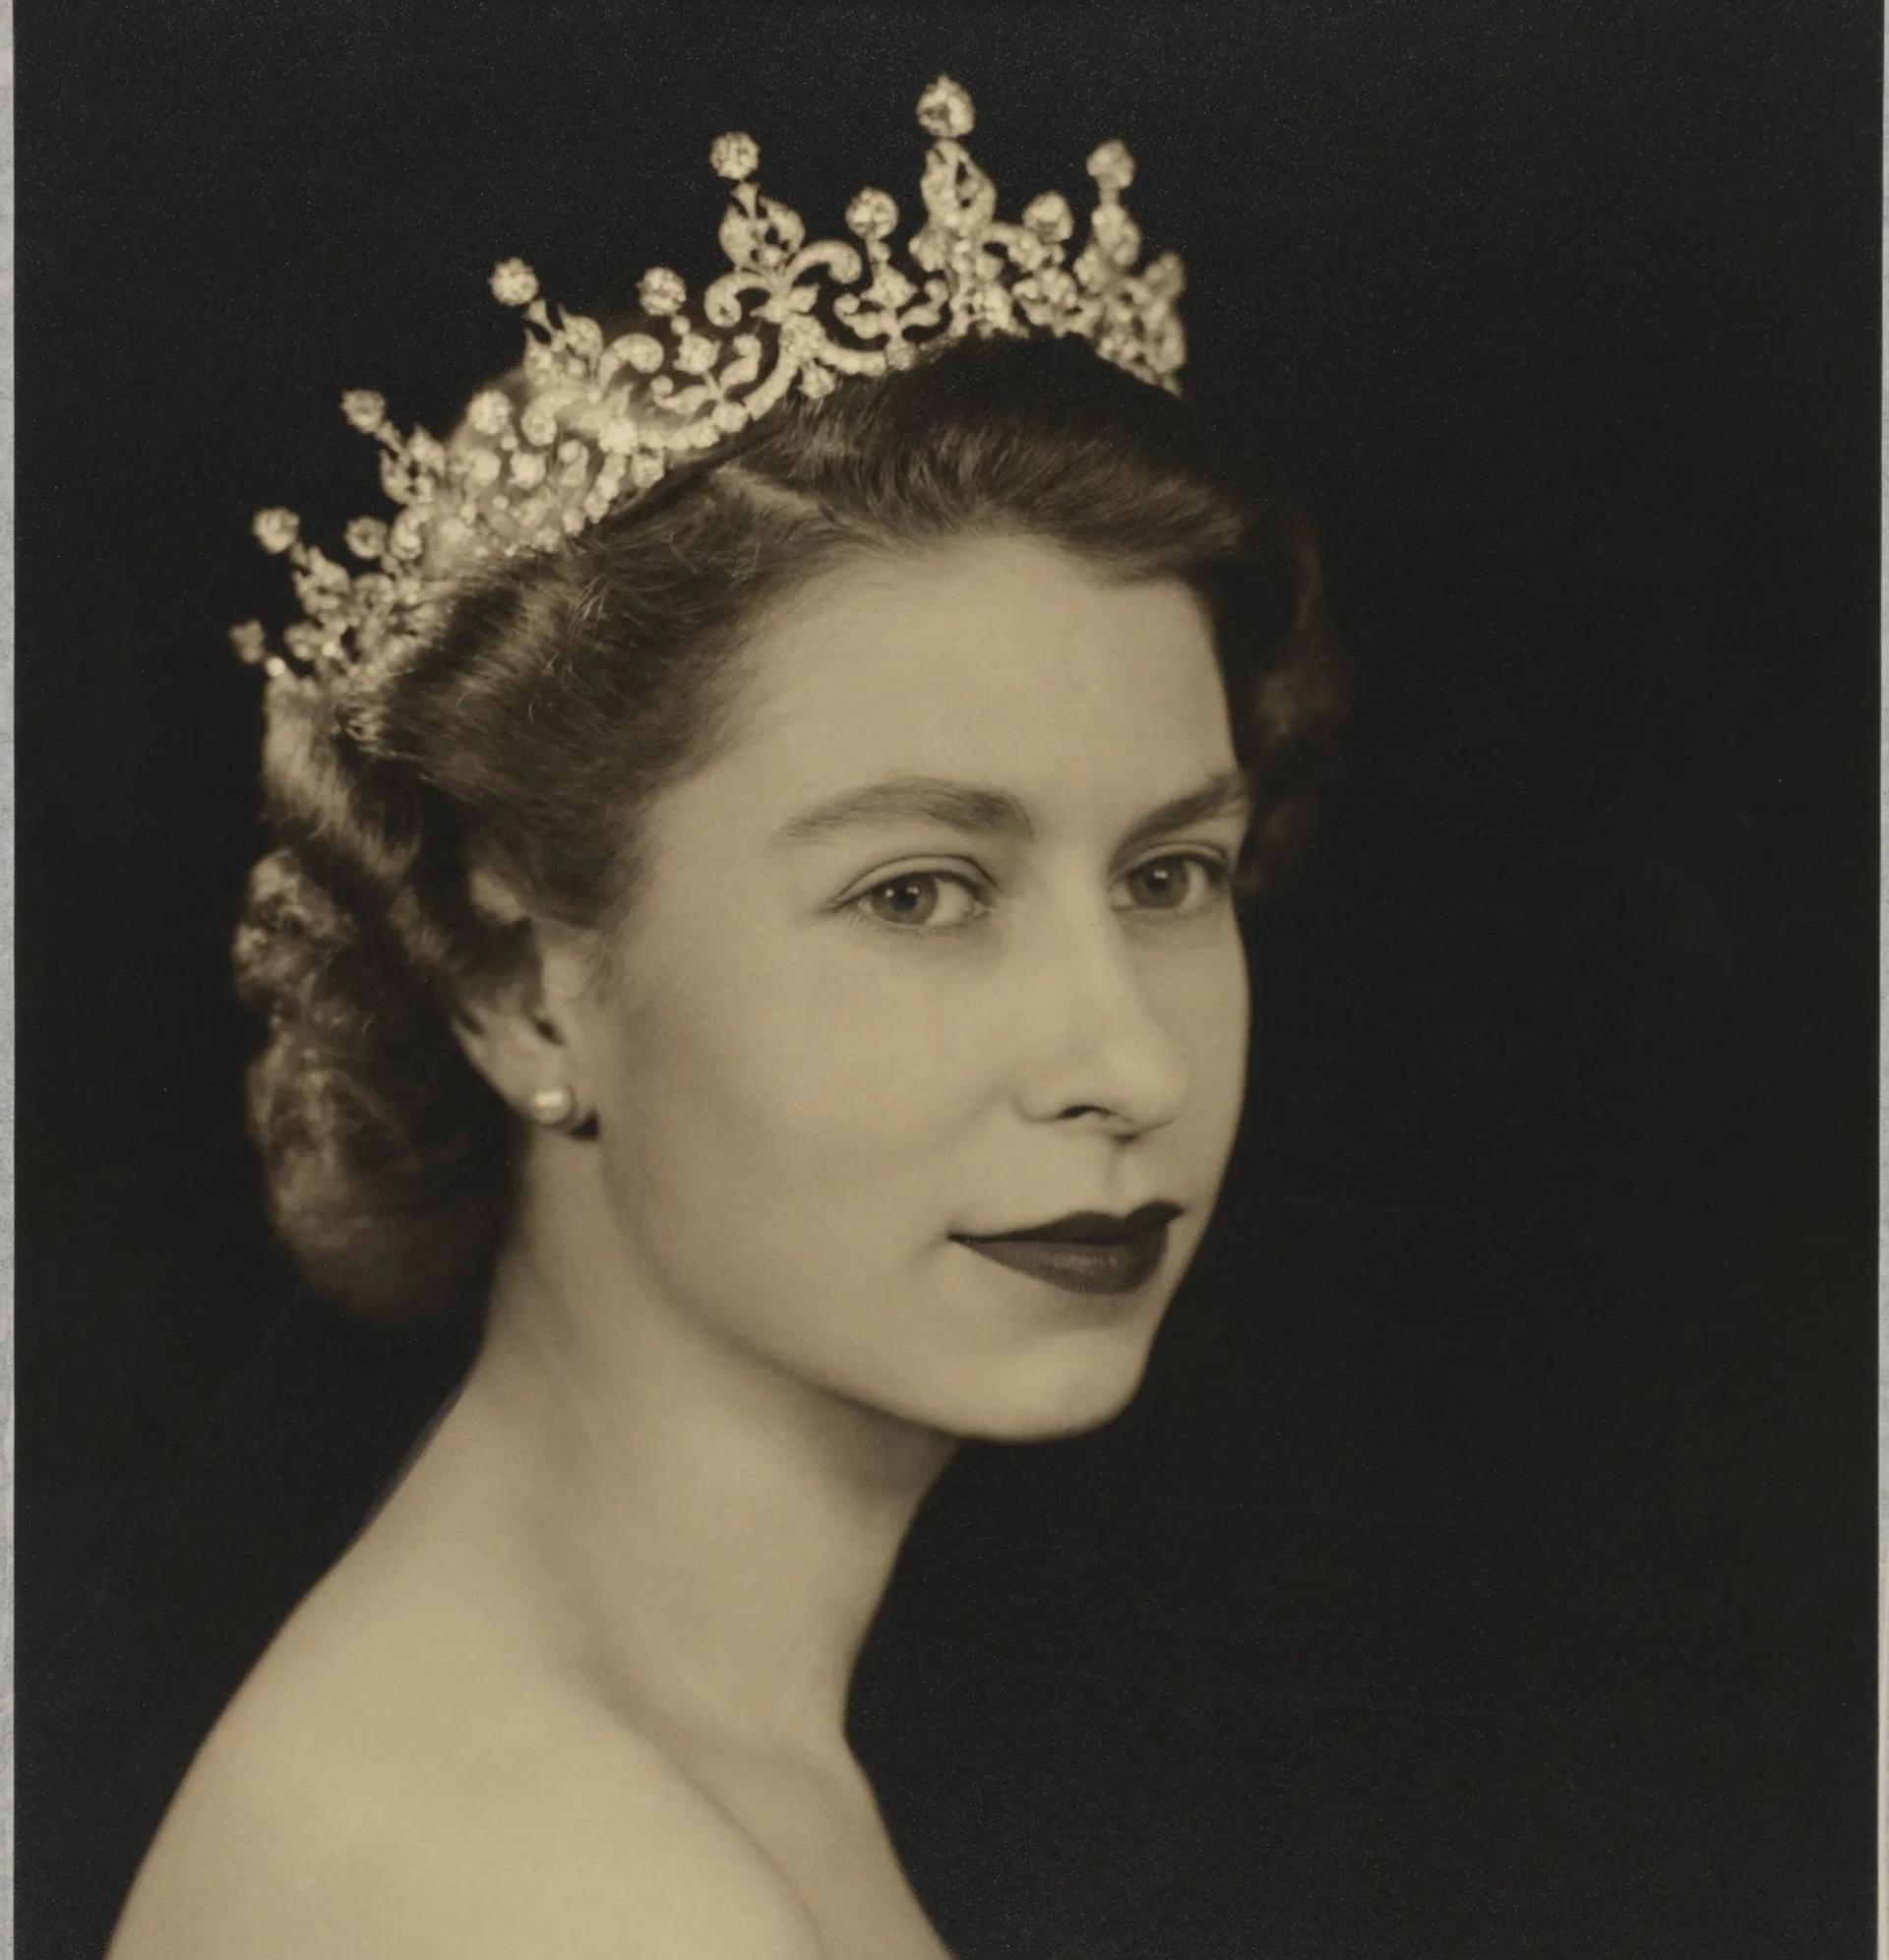 La reine Élisabeth II par Dorothy Wilding, 26 février 1952. © National Portrait Gallery, London